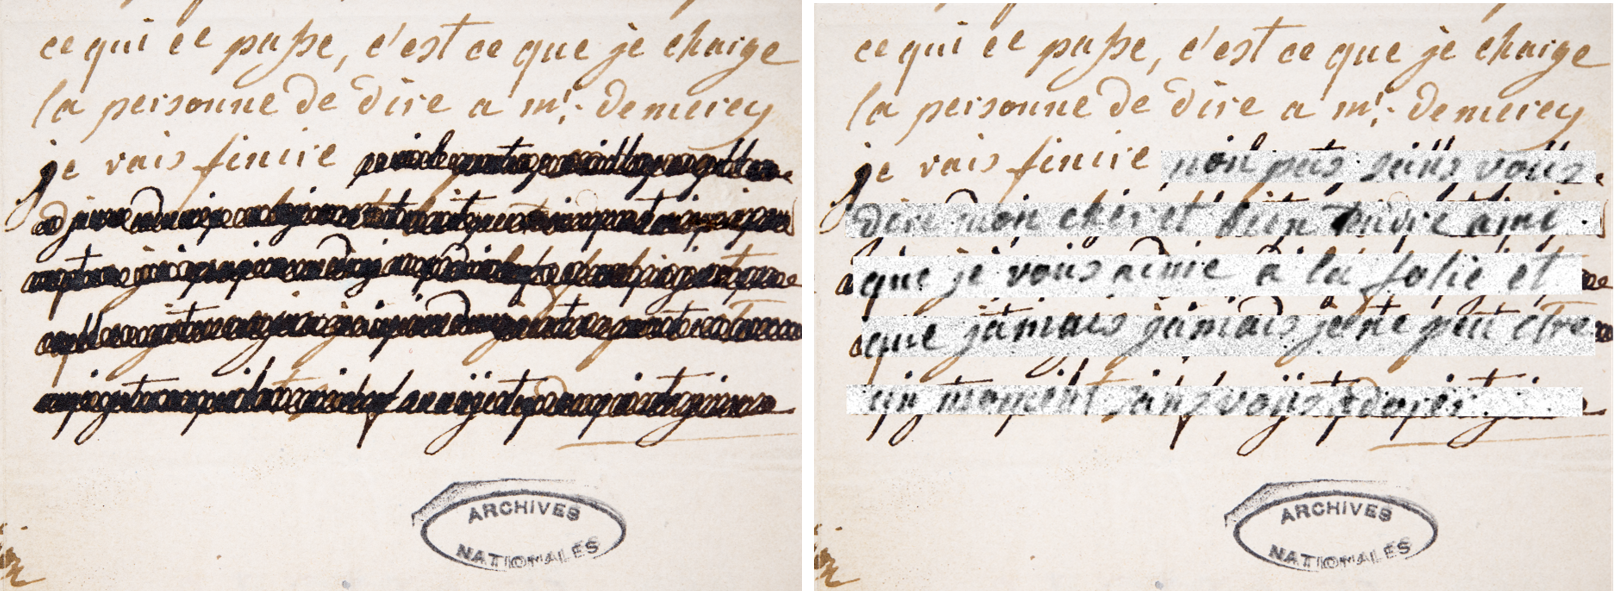 Lettre du 4 janvier 1792 écrite de la main de Marie-Antoinette, avant et après traitement. Archives nationales